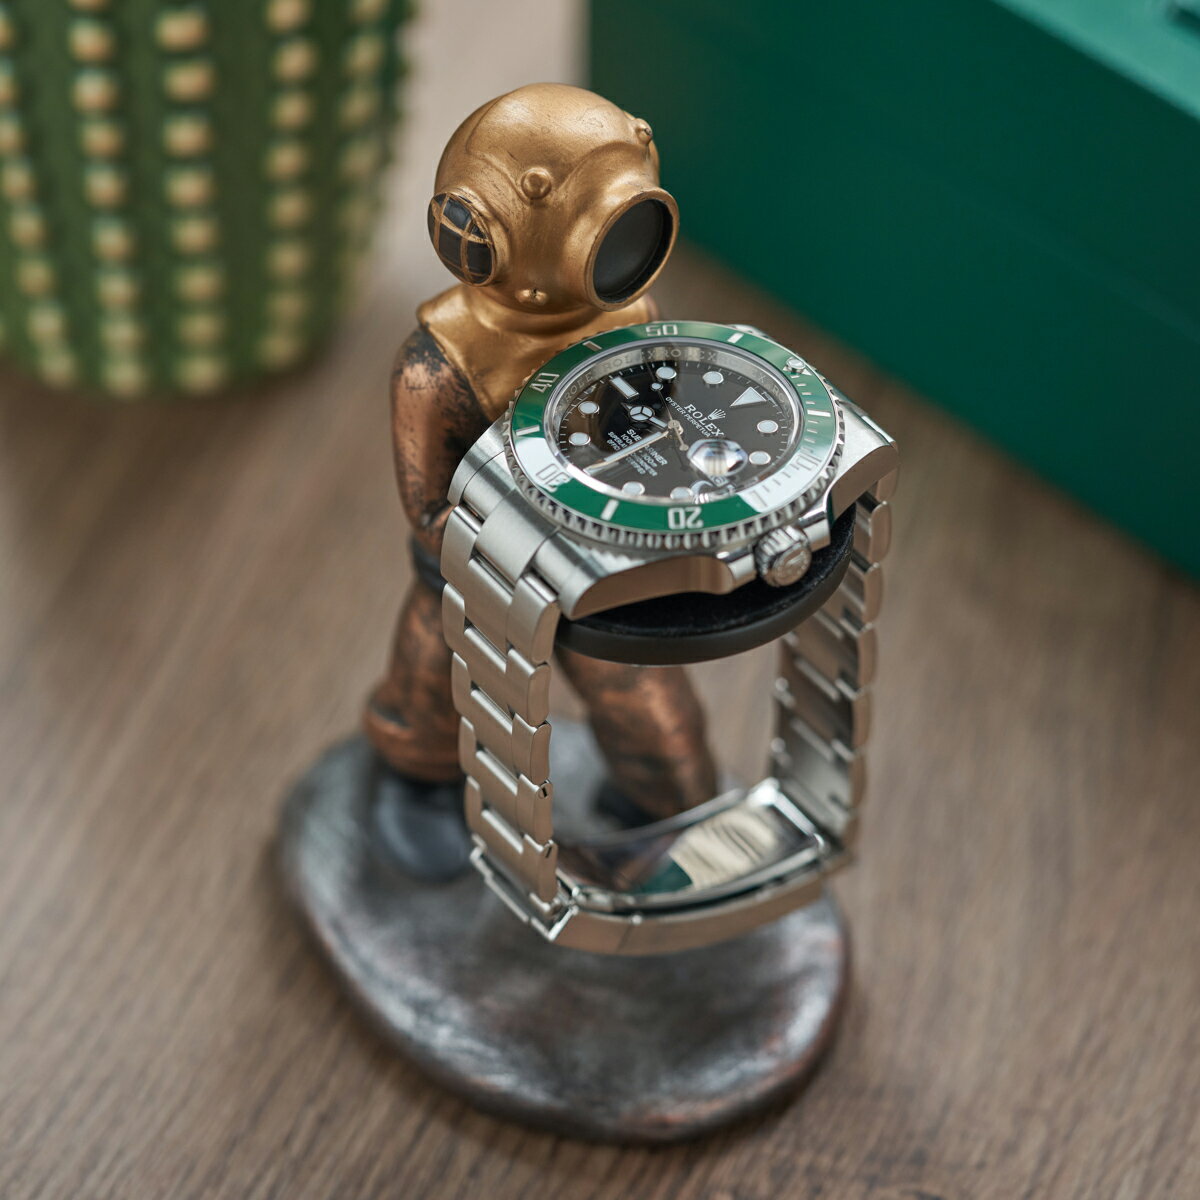 手錶架 手錶收納 手錶展示架 MADOX復古潛水員手錶架腕錶收納手錶展示架錶托diver watch stand『TS4877』